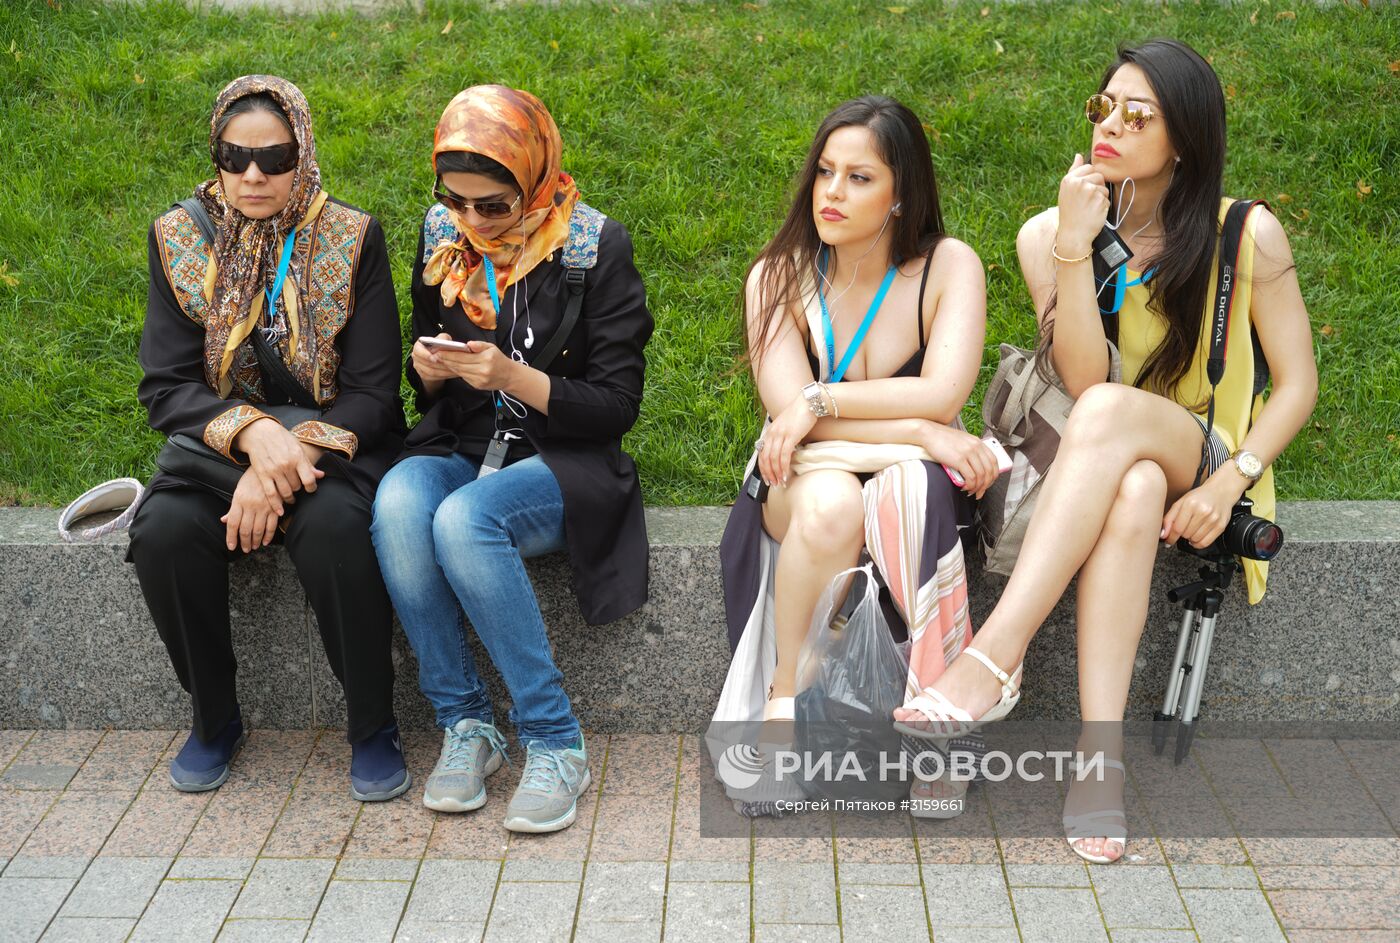 Туристы в Москве